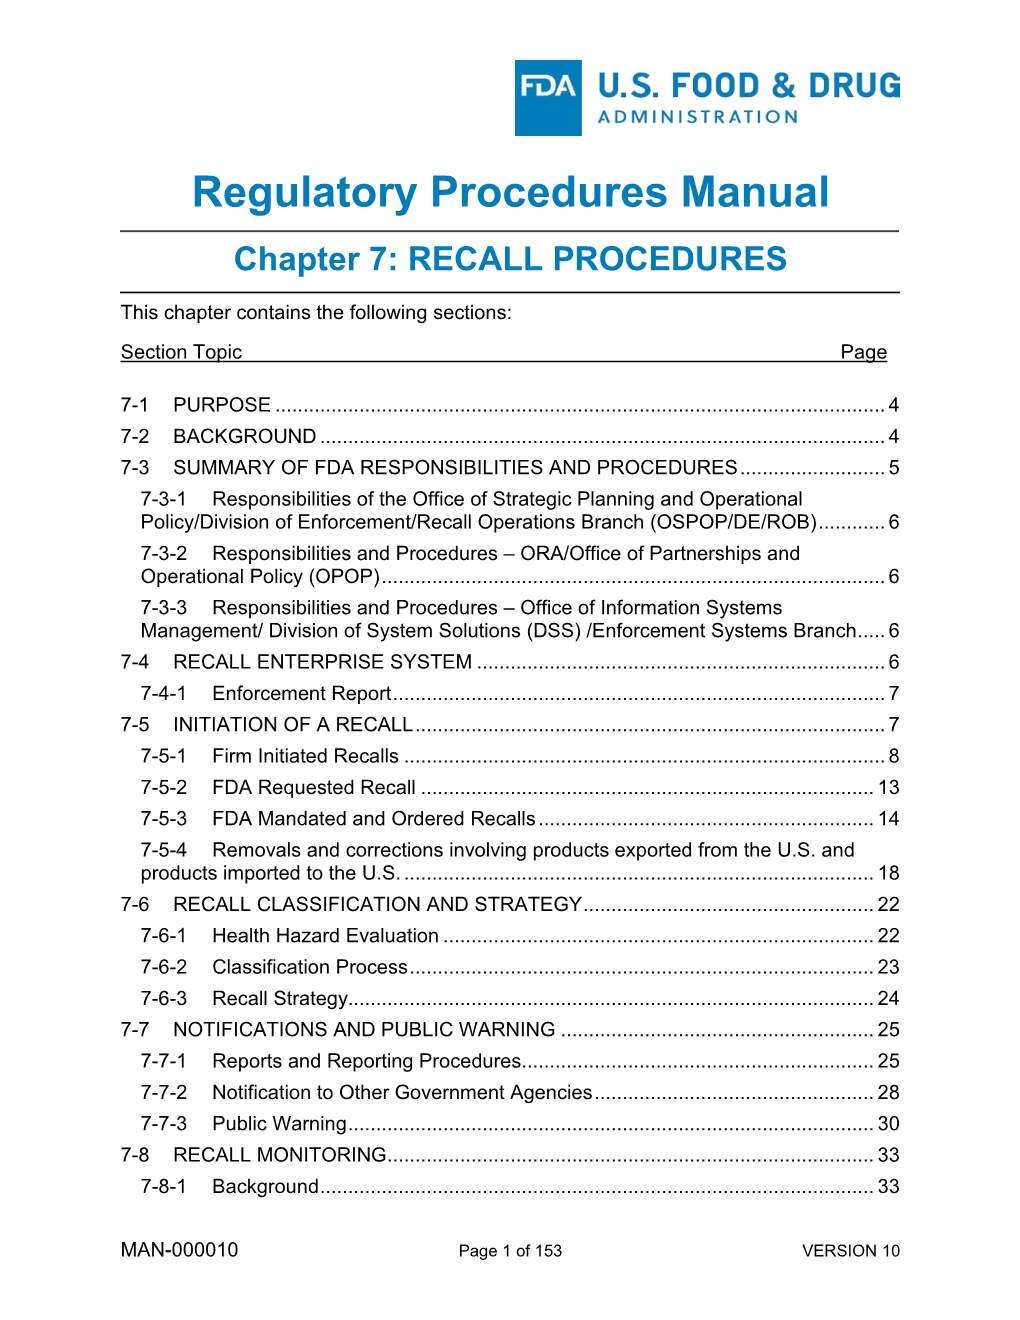 Regulatory Procedures Manual Chapter 7